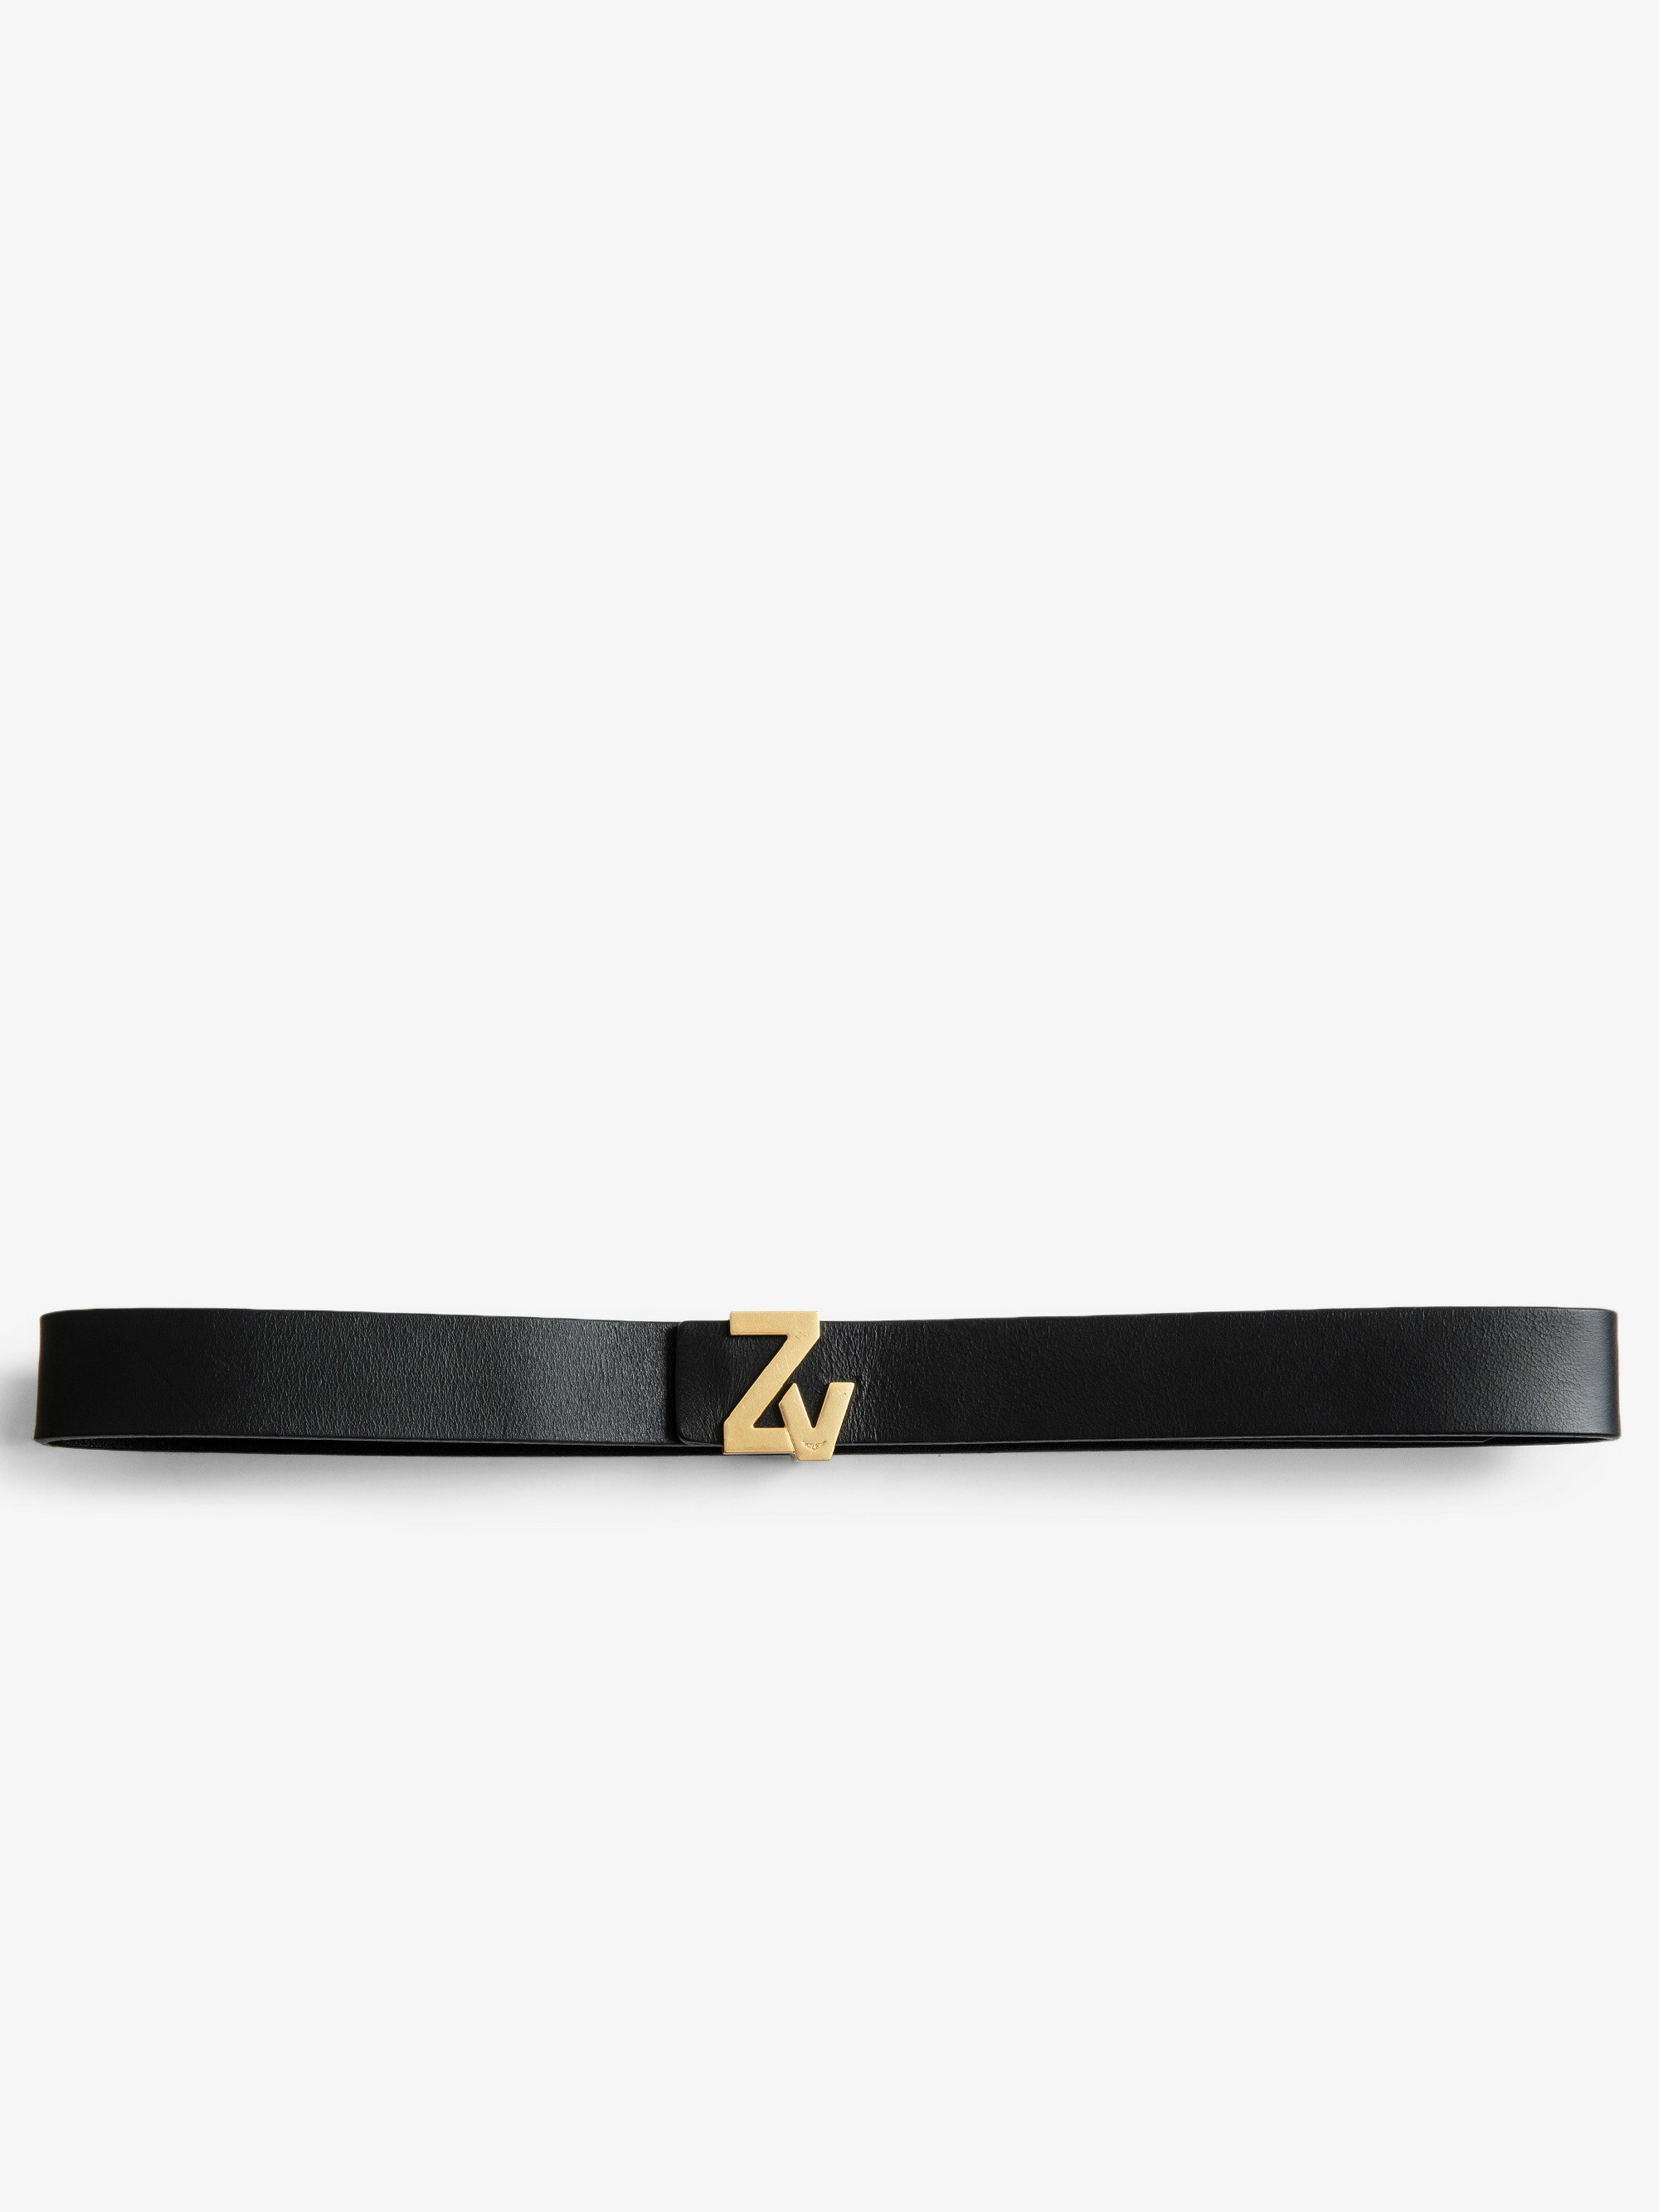 Cintura ZV Initiale La Mini Belt - Cintura in pelle nera con iniziali ZV donna